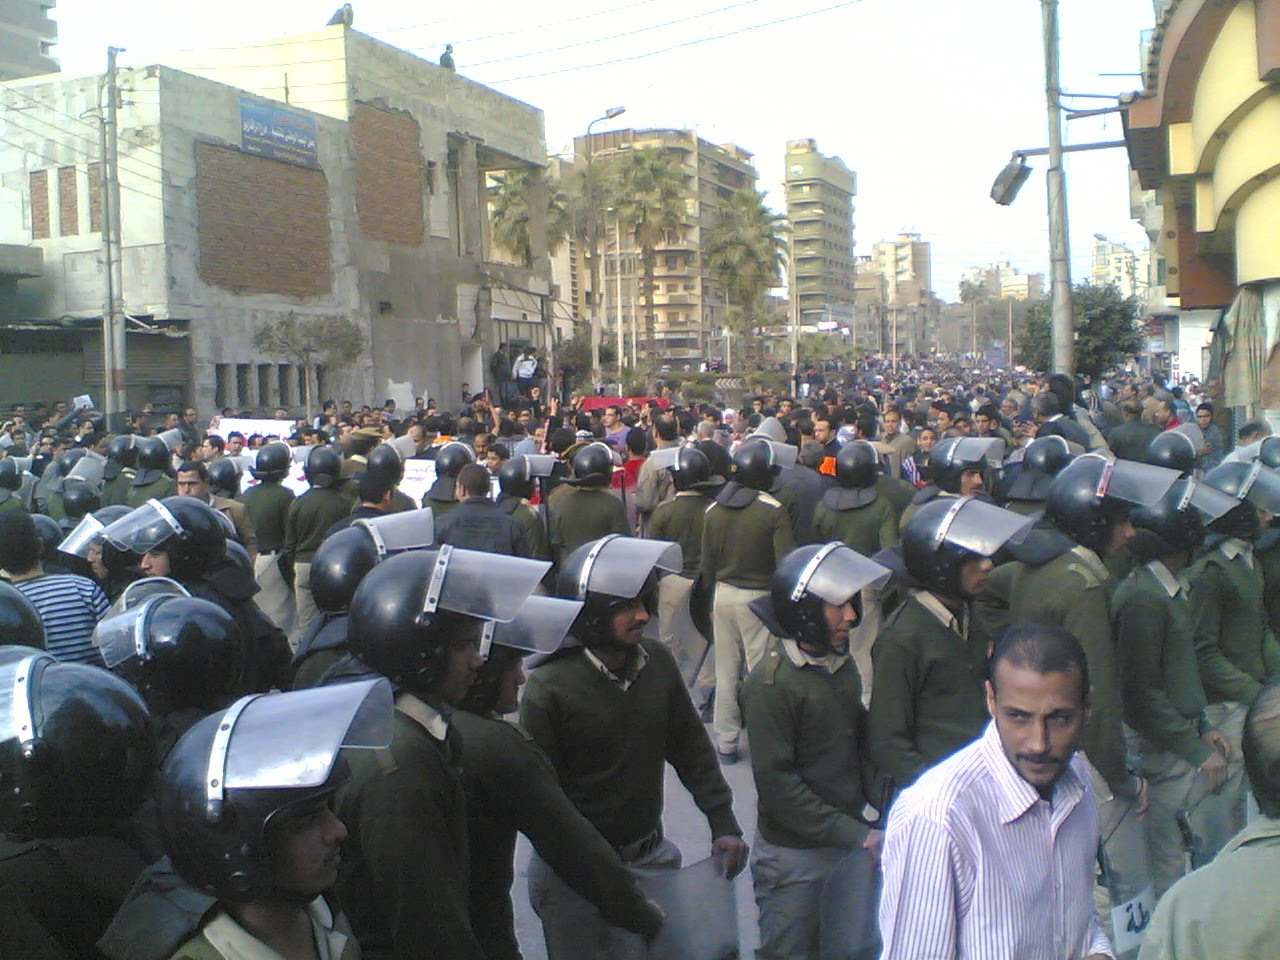 مشوارى: ثورة 25 يناير وجمعة الغضب فى الزقازيق